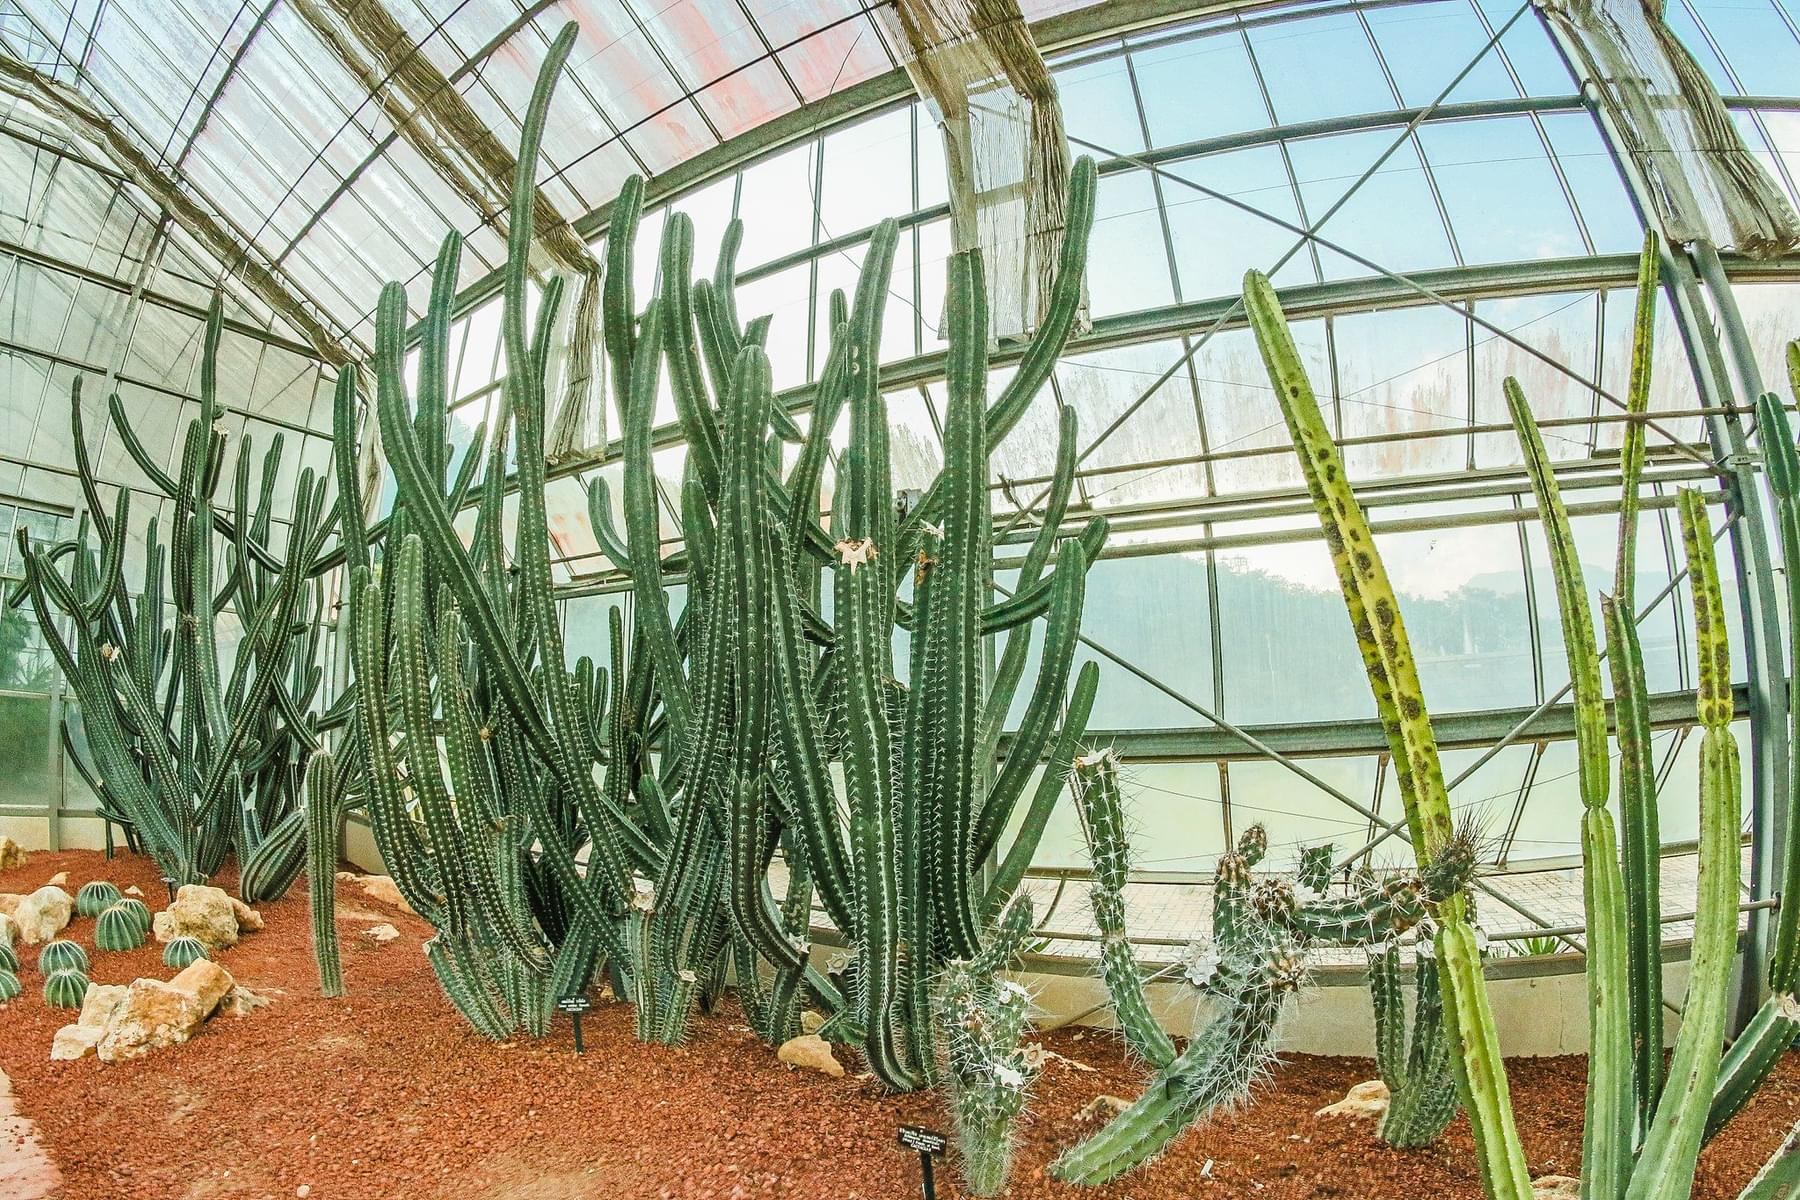 Cactus greenhouse